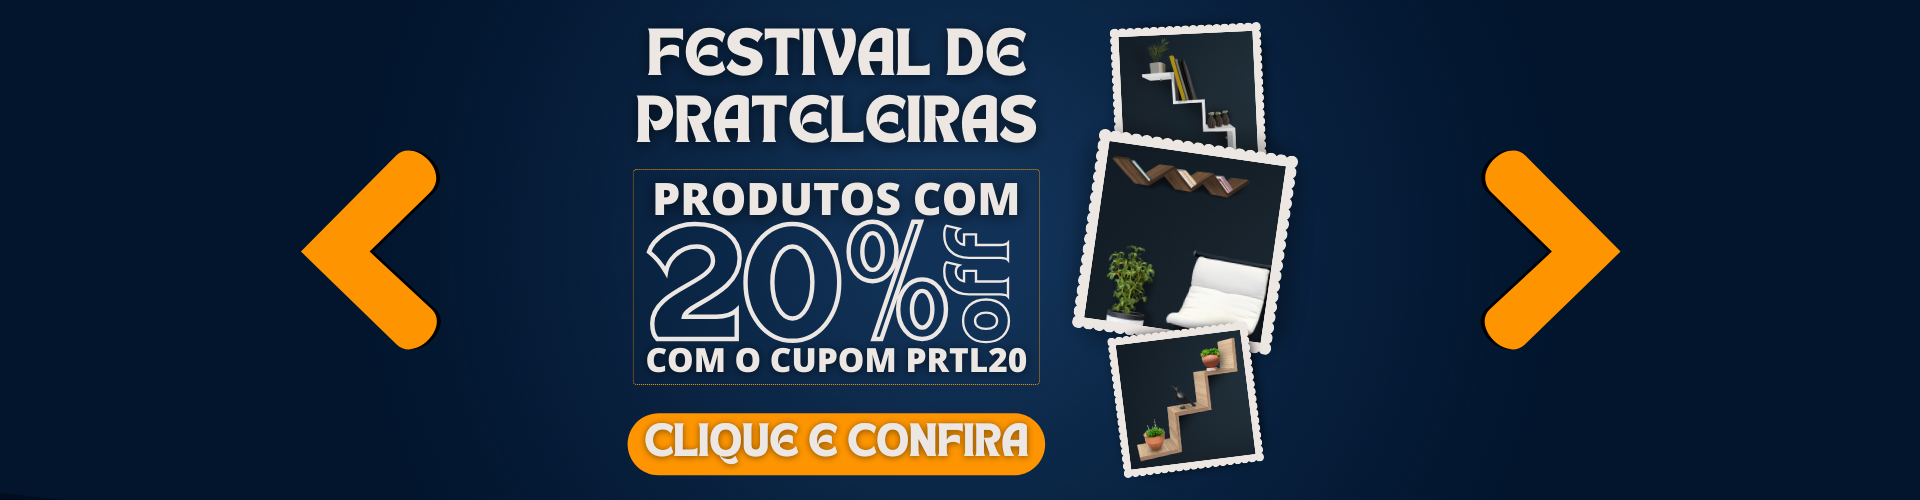 Festival de Prateleiras - Cupom 20%OFF